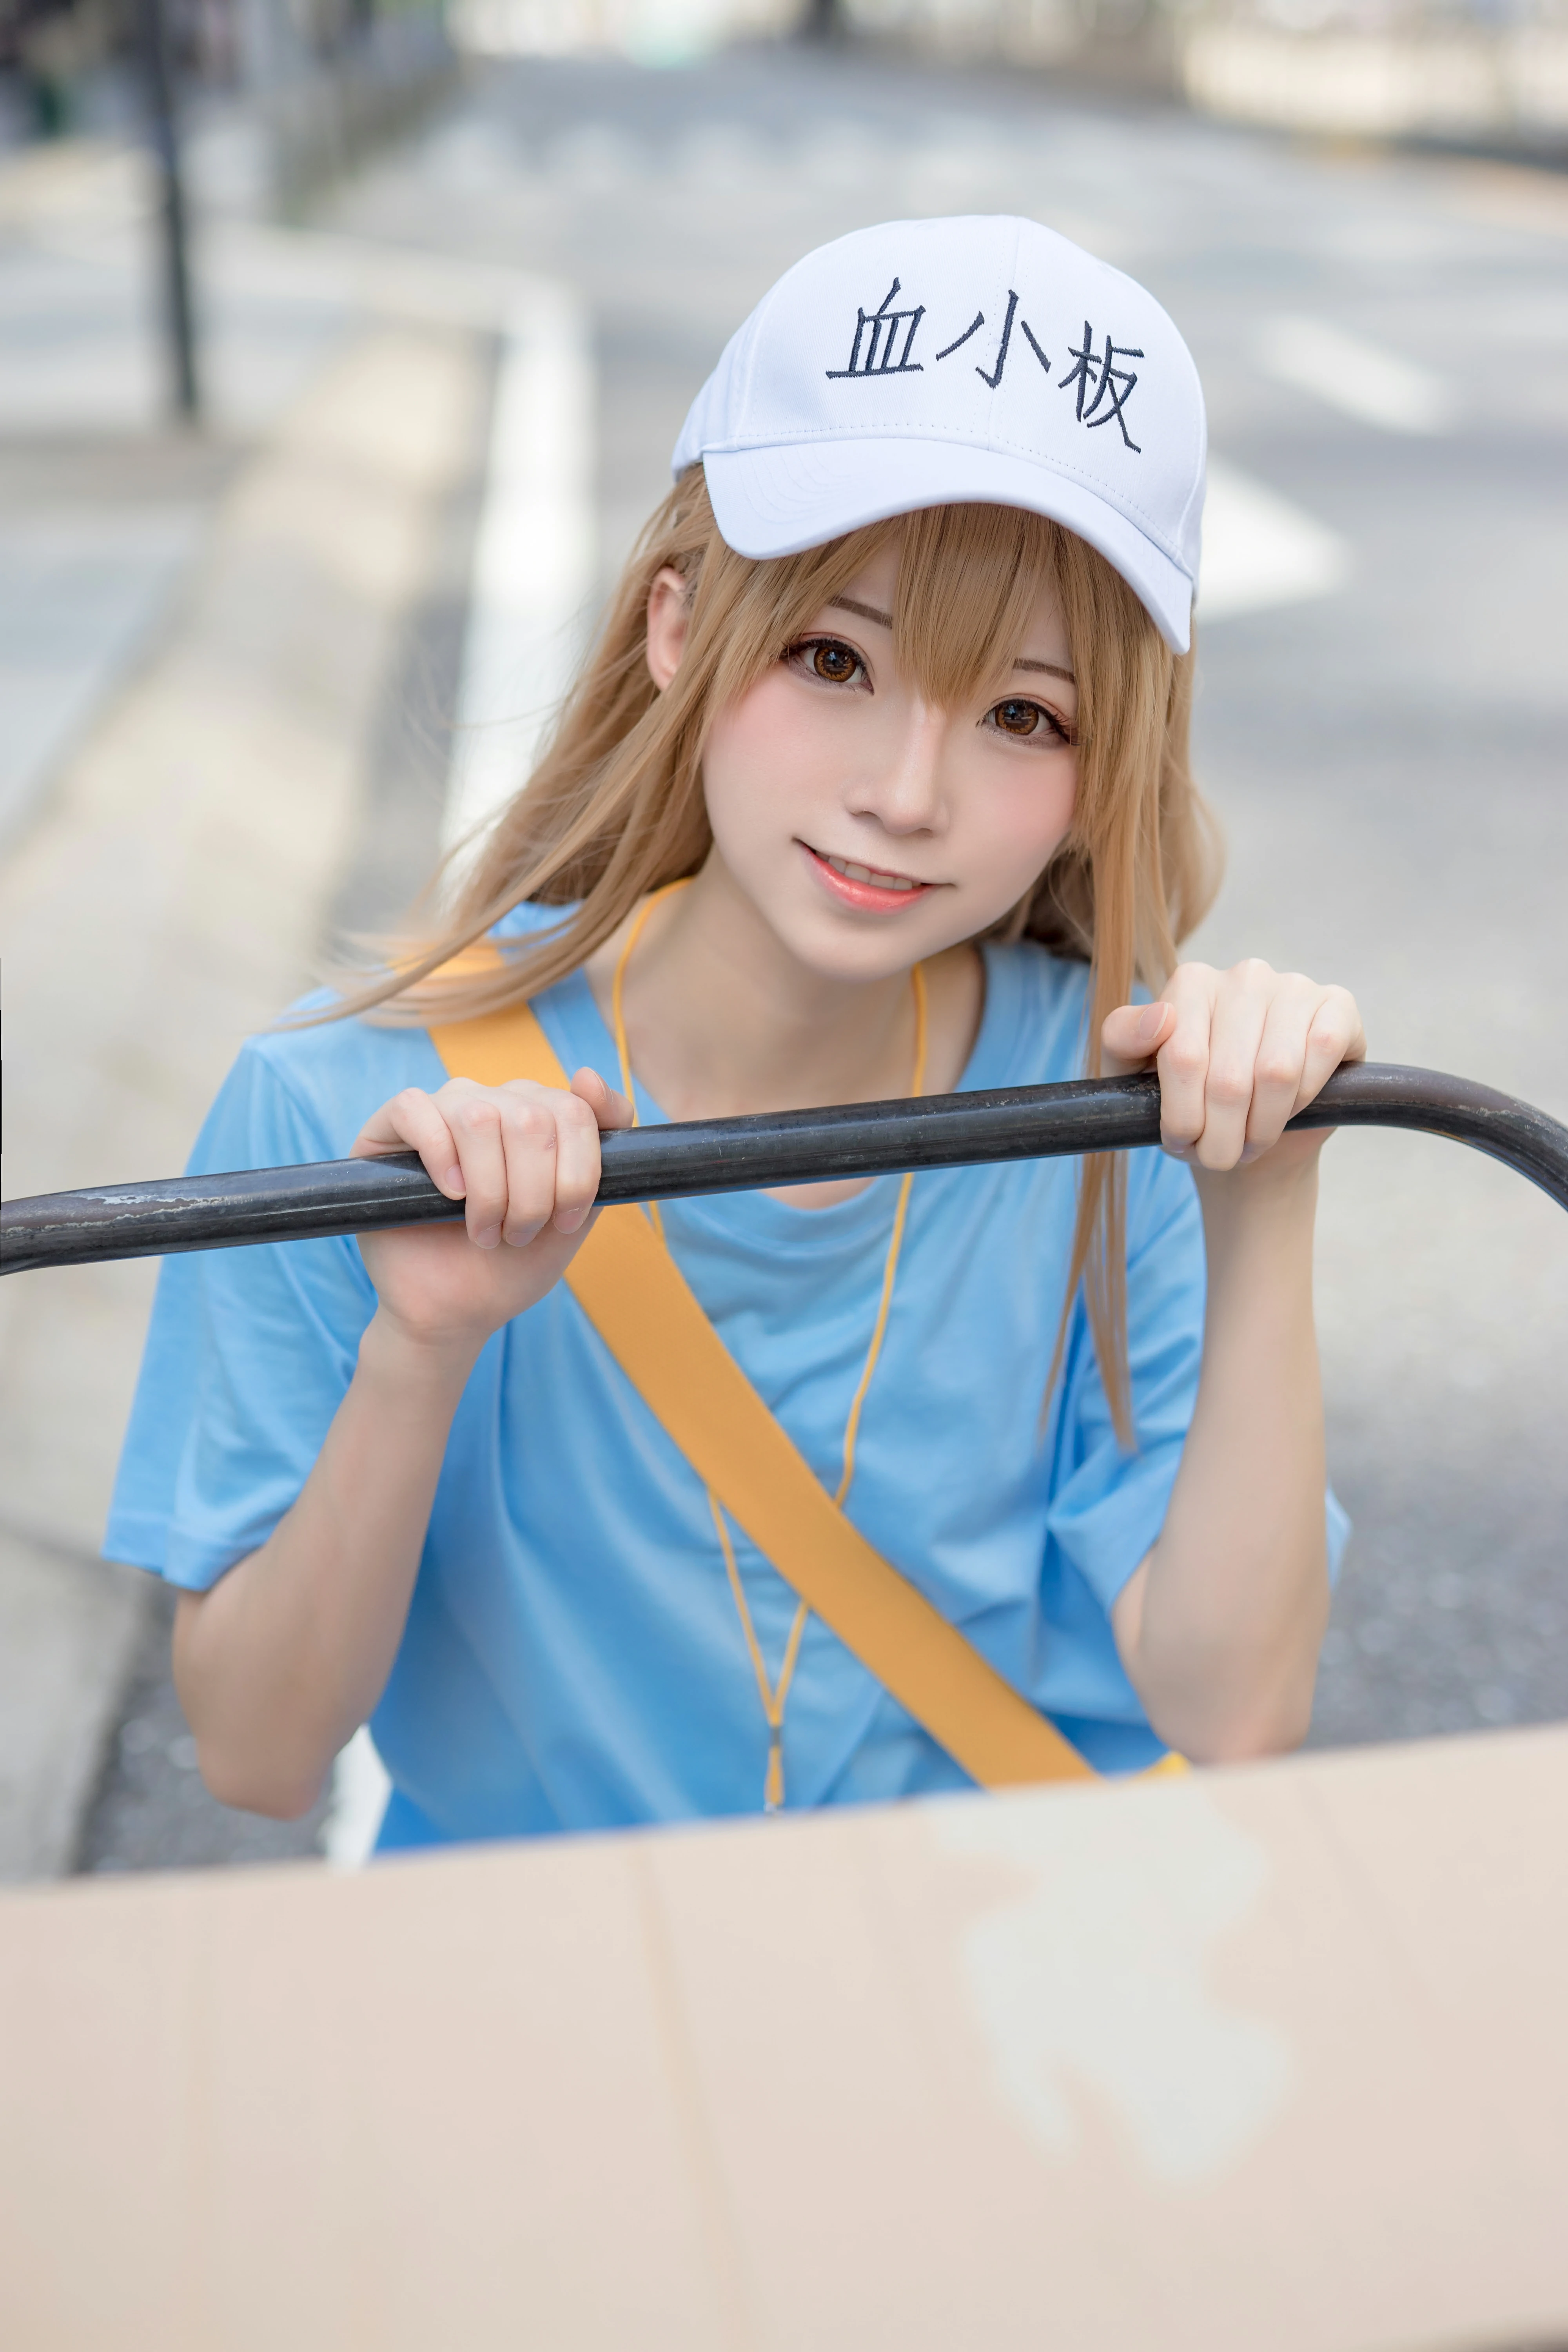 清纯少女快递员 绮太郎Kitaro 血小板 蓝色连身短袖街拍写真,1190